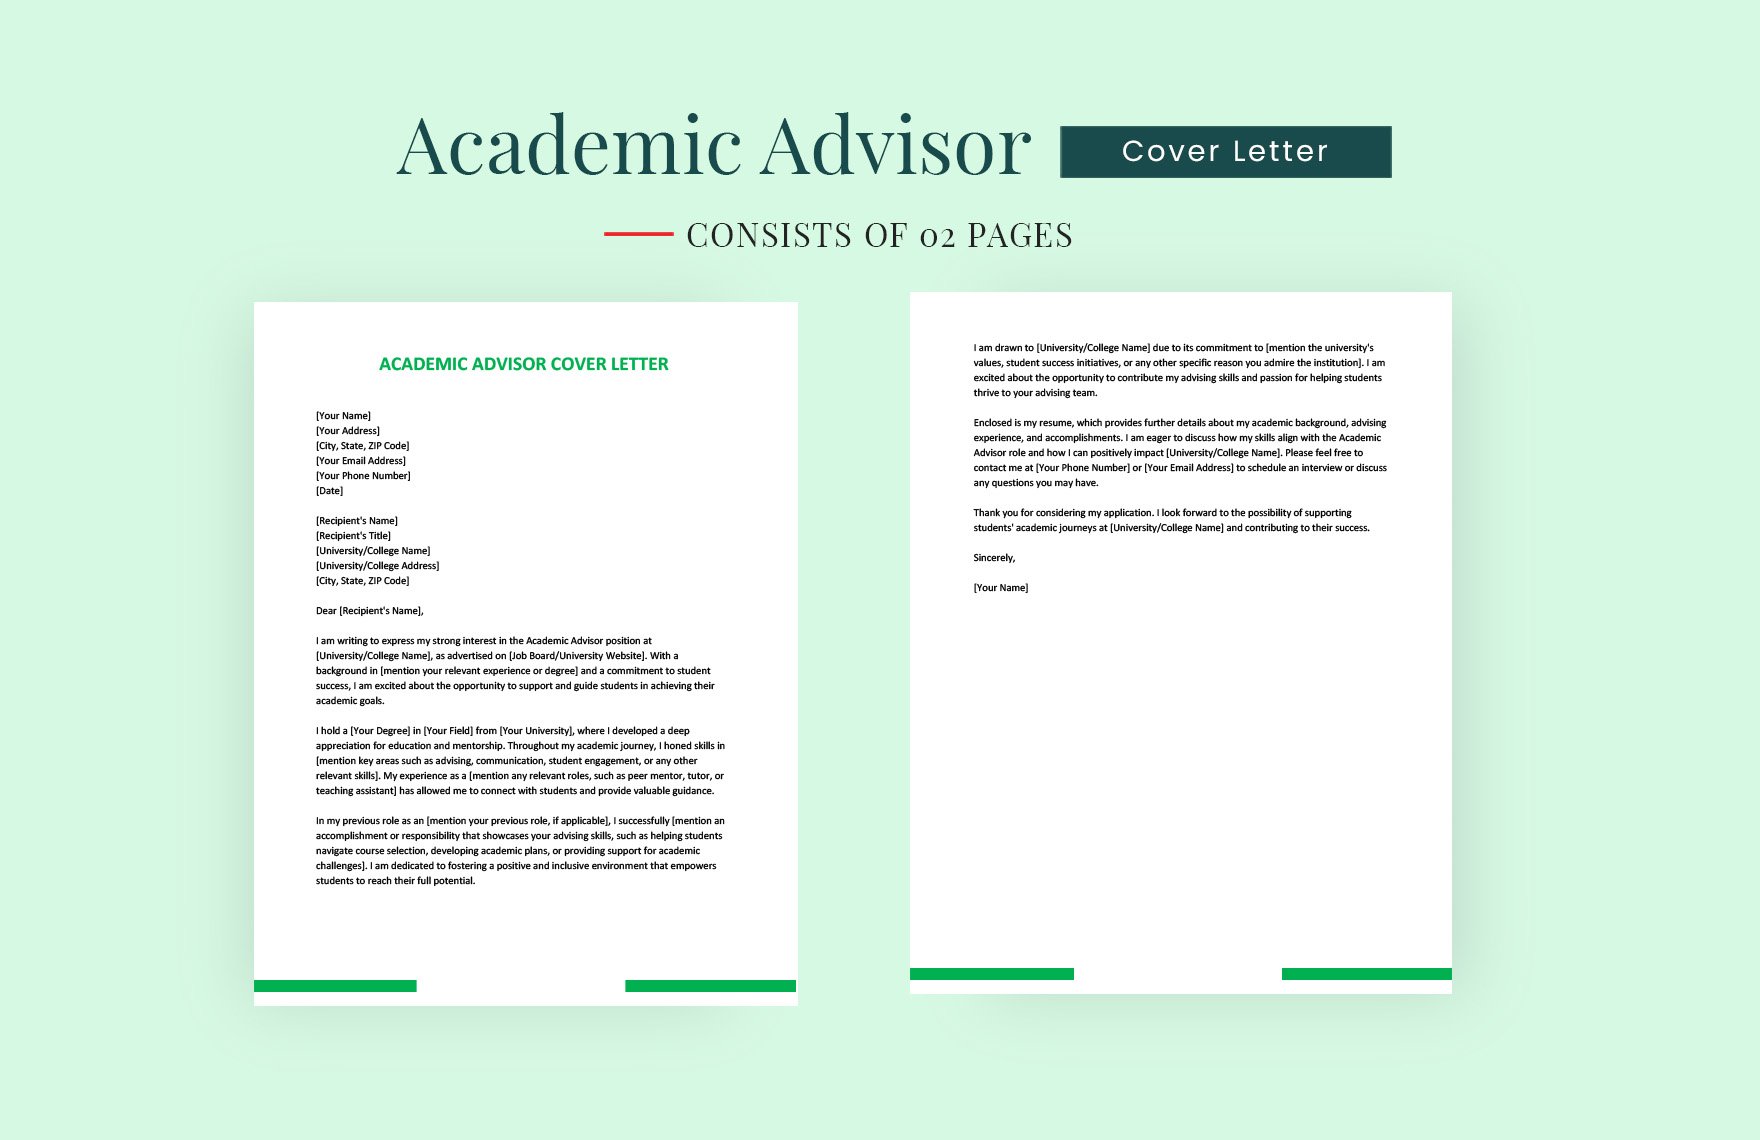 Academic Advisor Cover Letter in Word, Google Docs